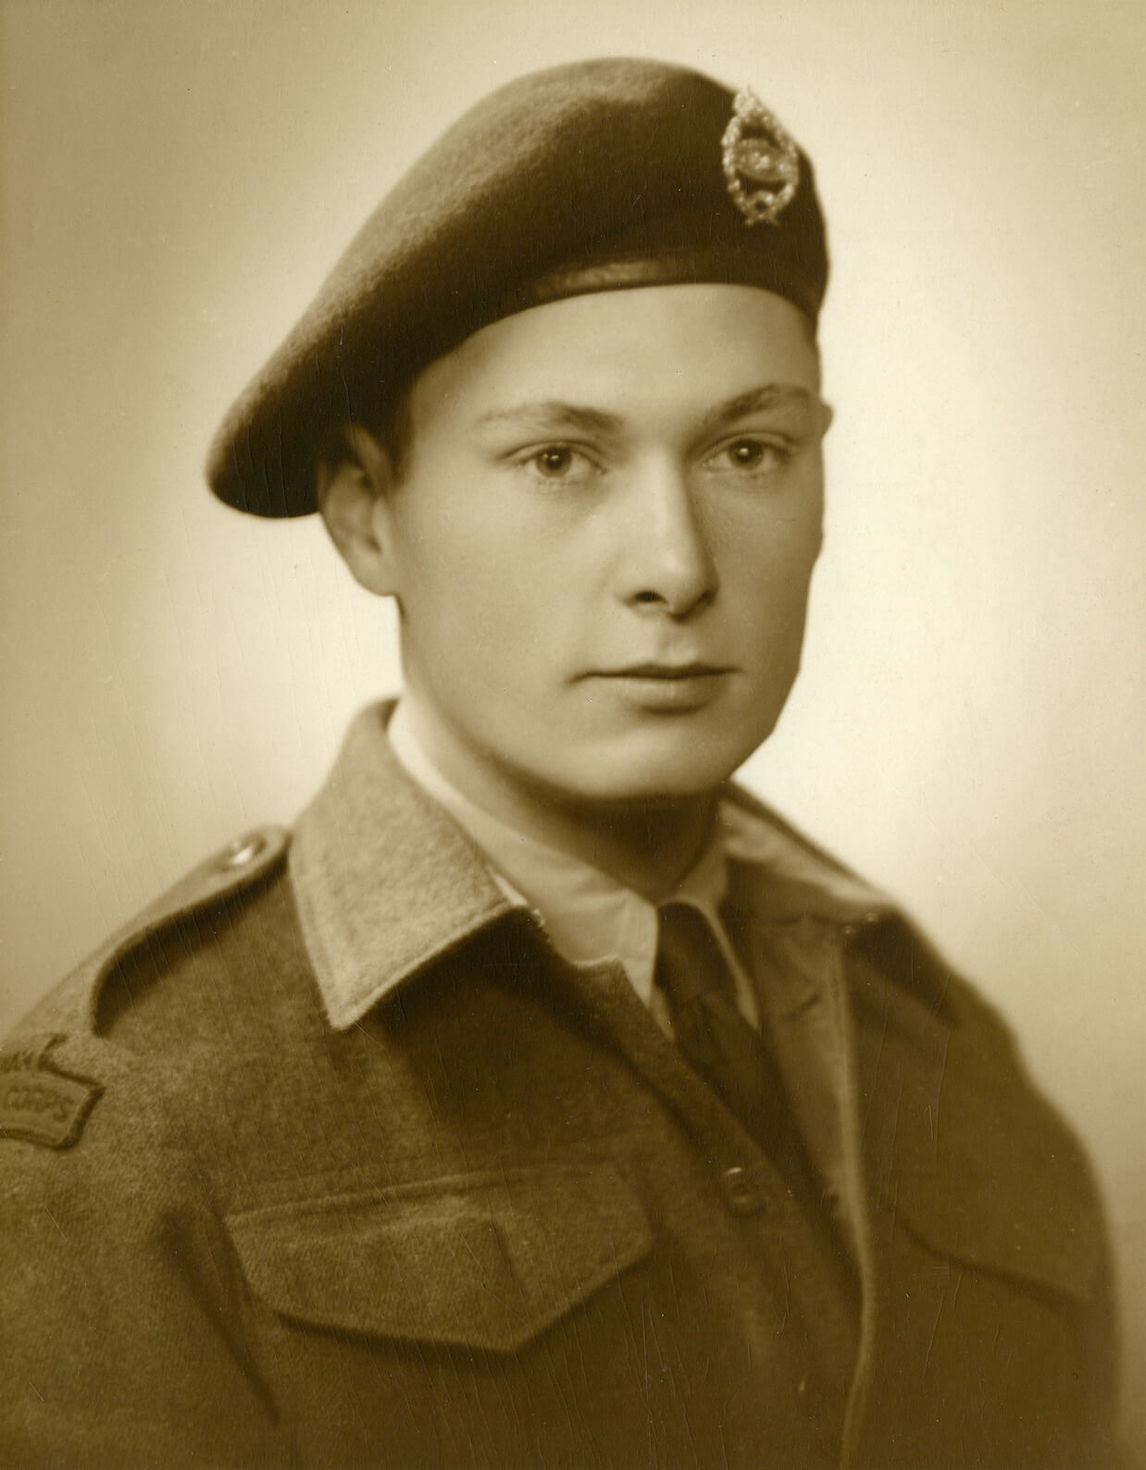 Paterson Ewen dans son uniforme de l’armée, vers 1944